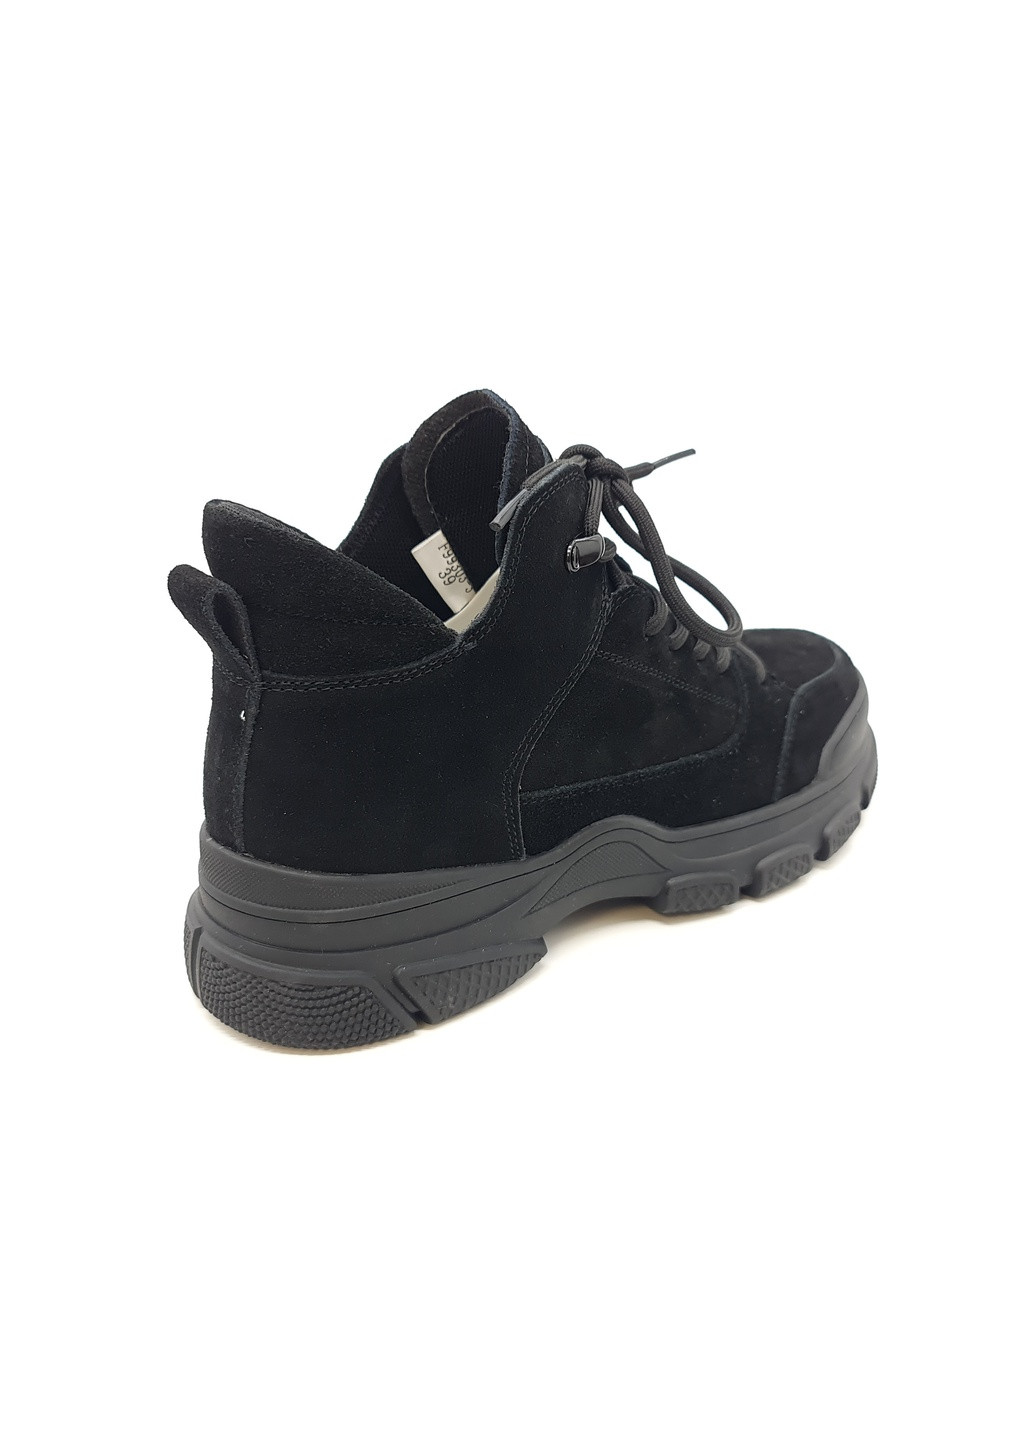 Осенние женские ботинки черные замшевые l-11-7 23 см (р) Lonza